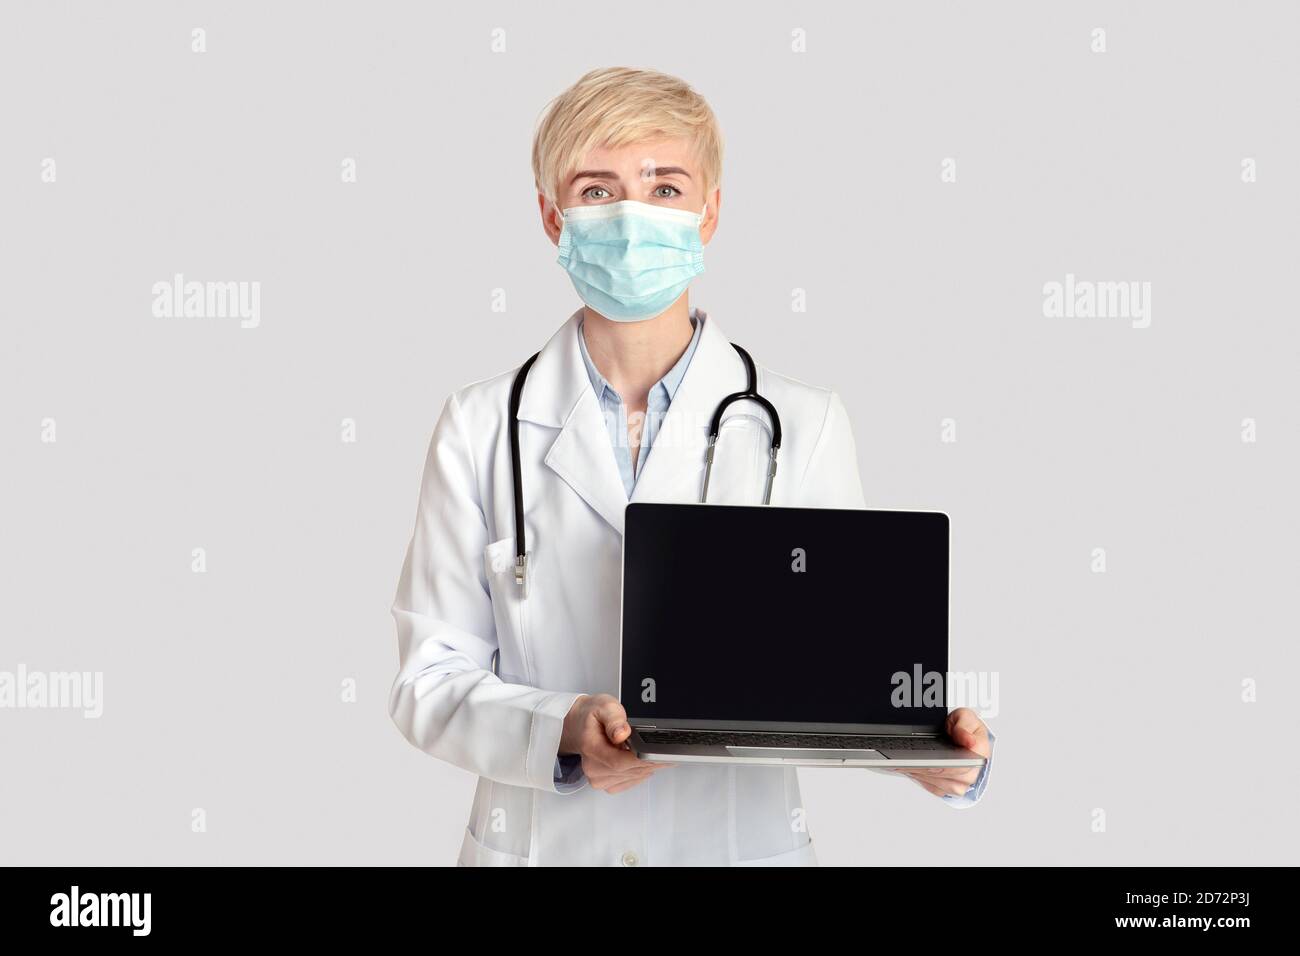 Femme adulte sérieuse en manteau blanc avec stéthoscope et protecteur le masque affiche l'ordinateur portable avec un écran vide Banque D'Images